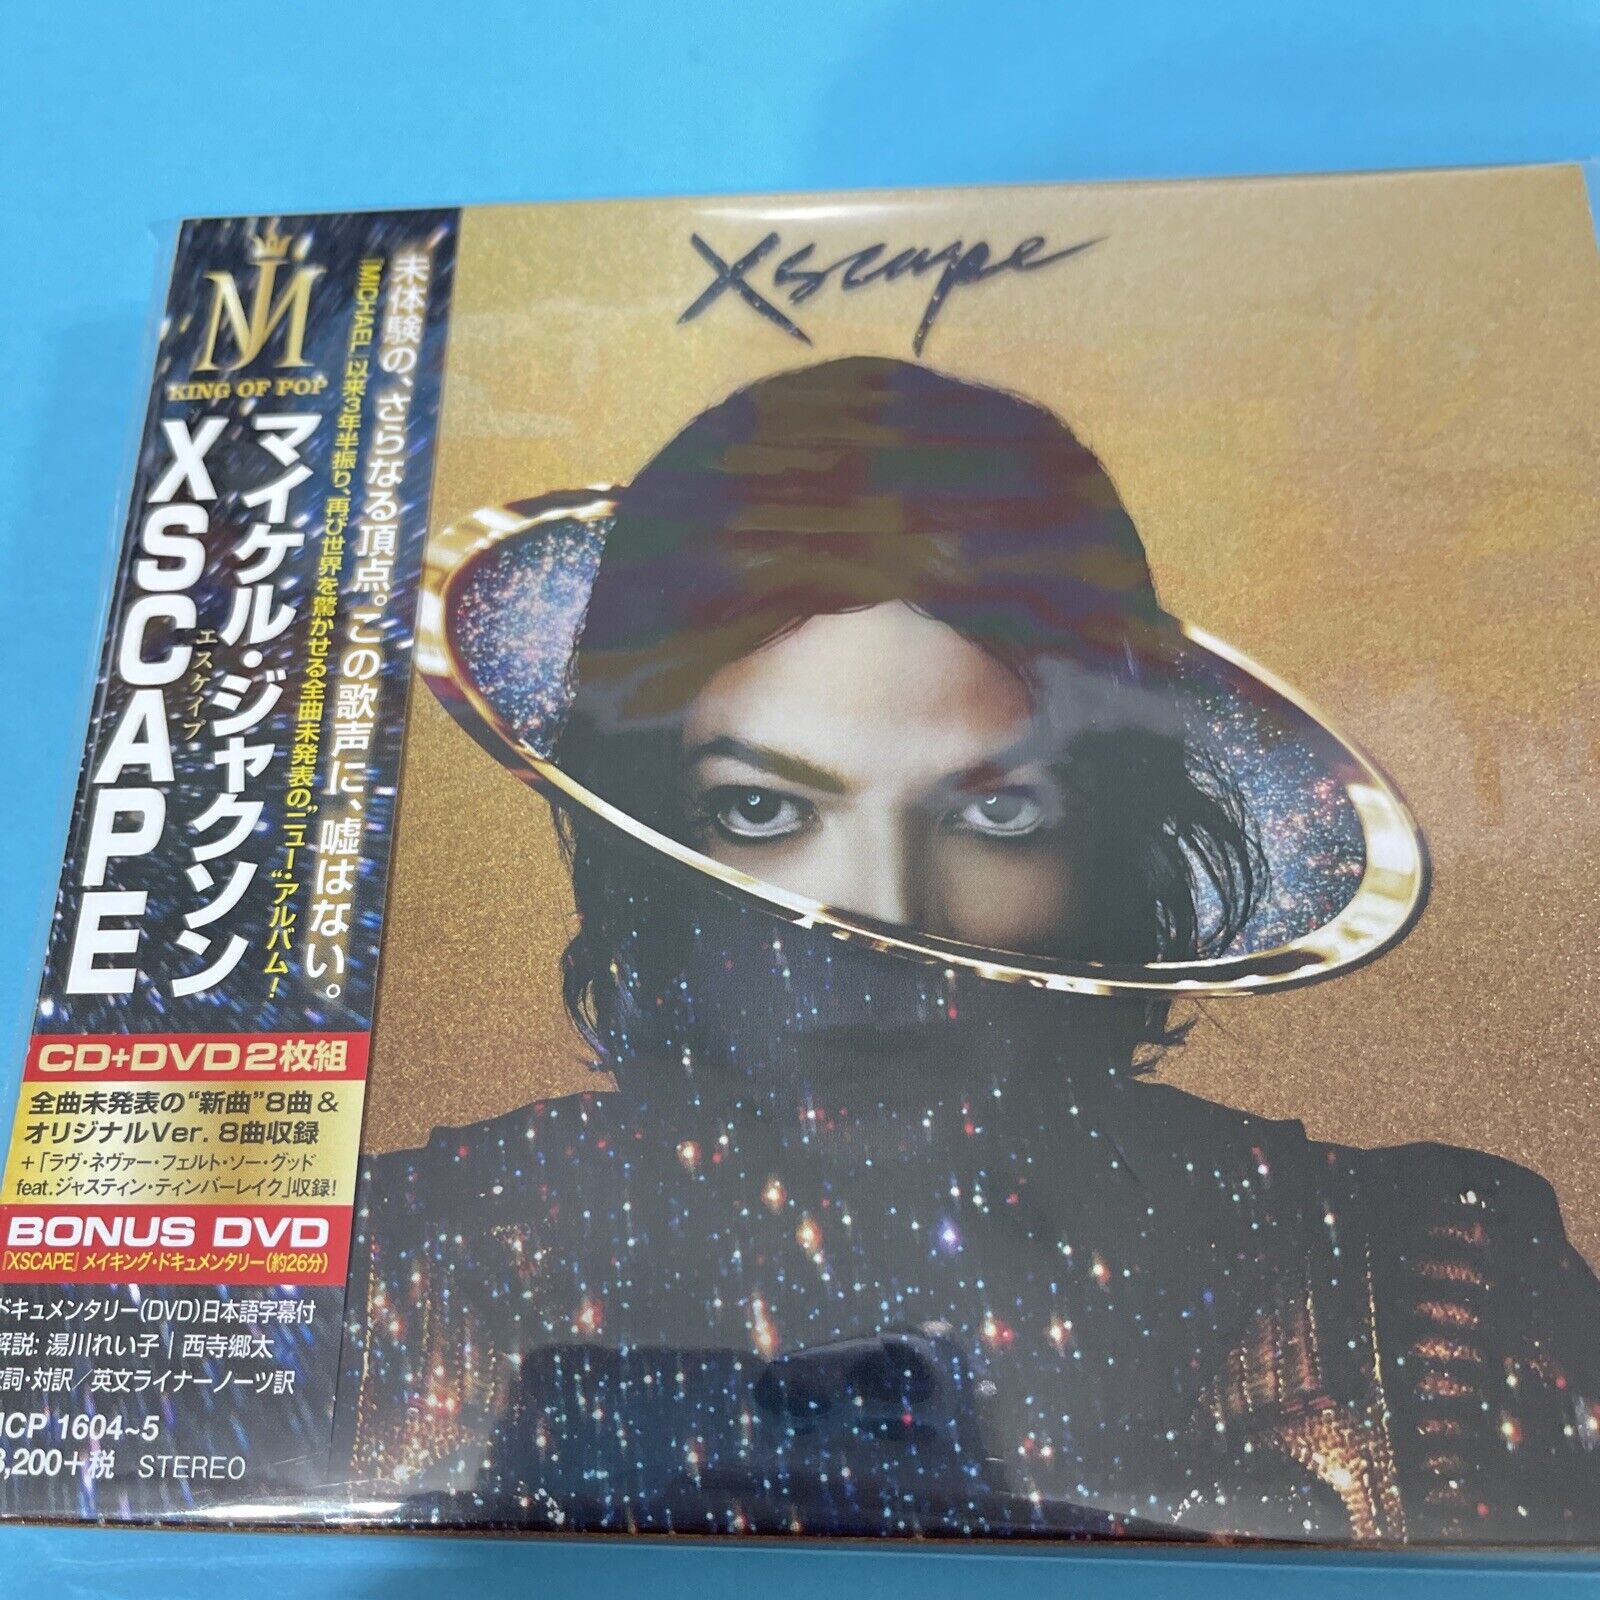 MICHAEL JACKSON -XSCAPE JAPAN EDITION RELEASE RARE 2-CD SET EICP-1604-5